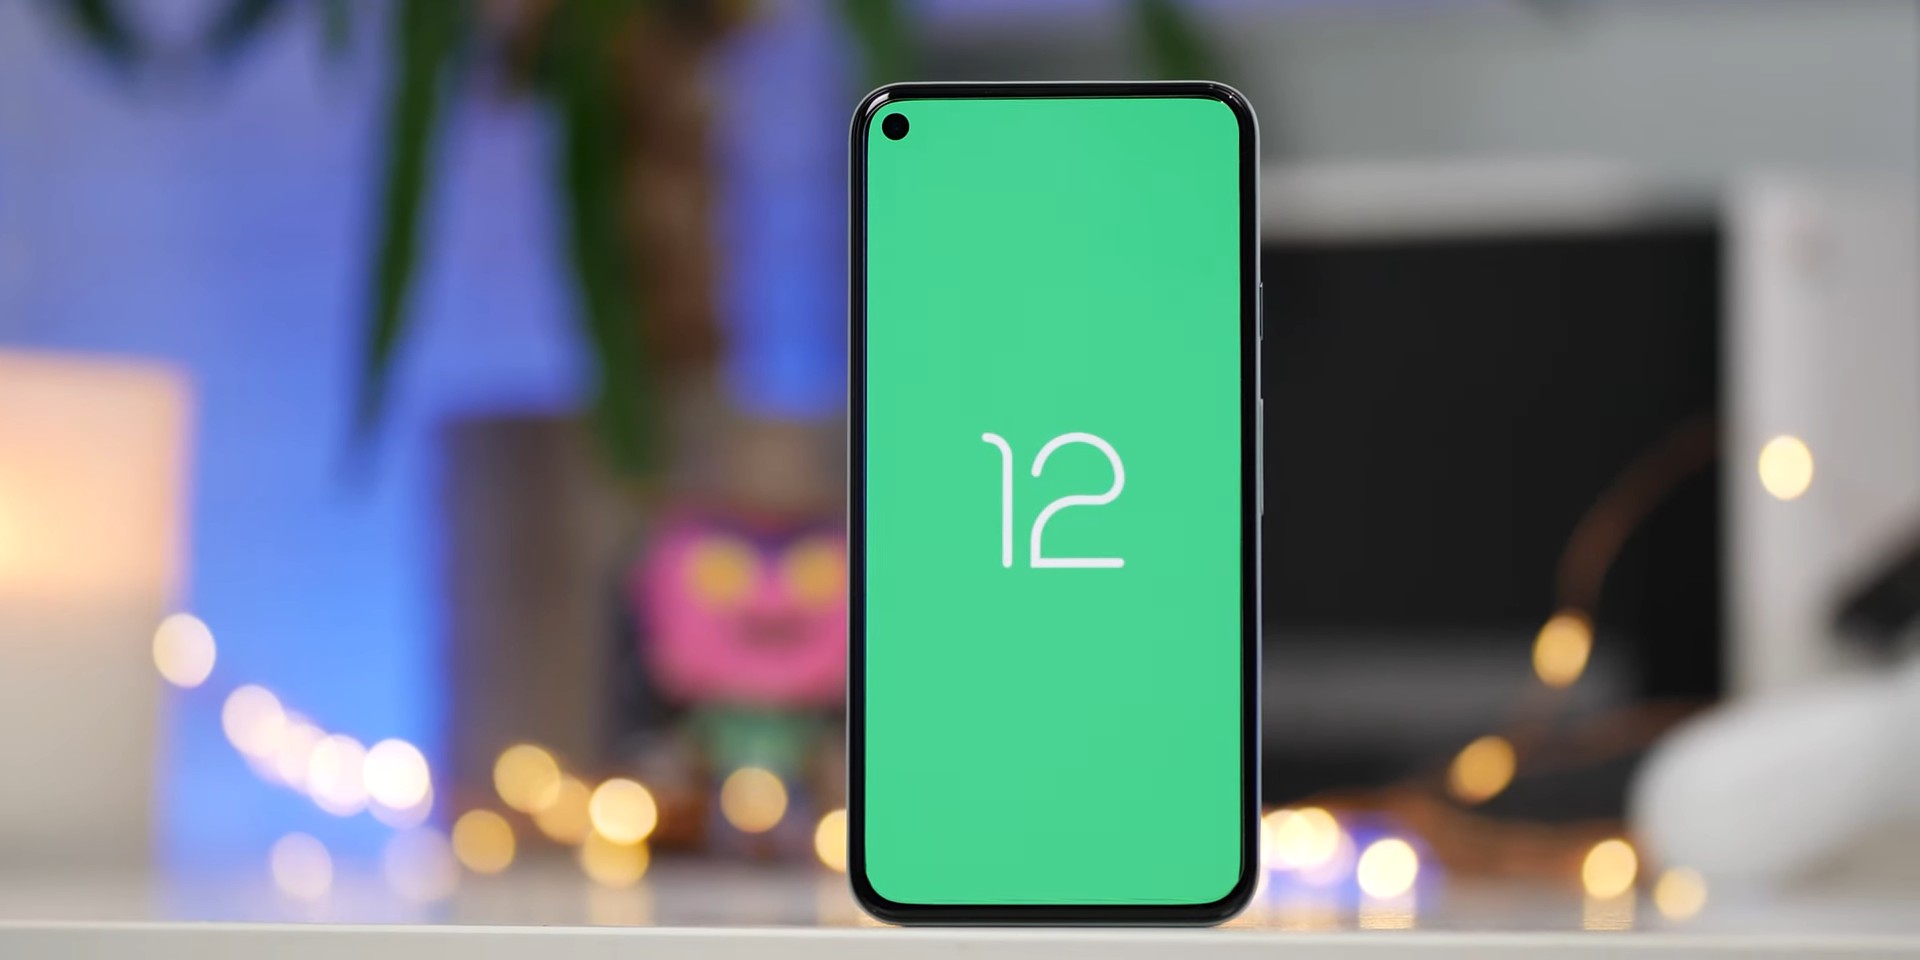 Preview do android 12 tem modo compacto para usar com uma mão. Novo preview do android 12 mostra o modo compacto, para uso de celulares de tela grande com uma mão só, novo visual da tela de senhas e o espaço de pessoas